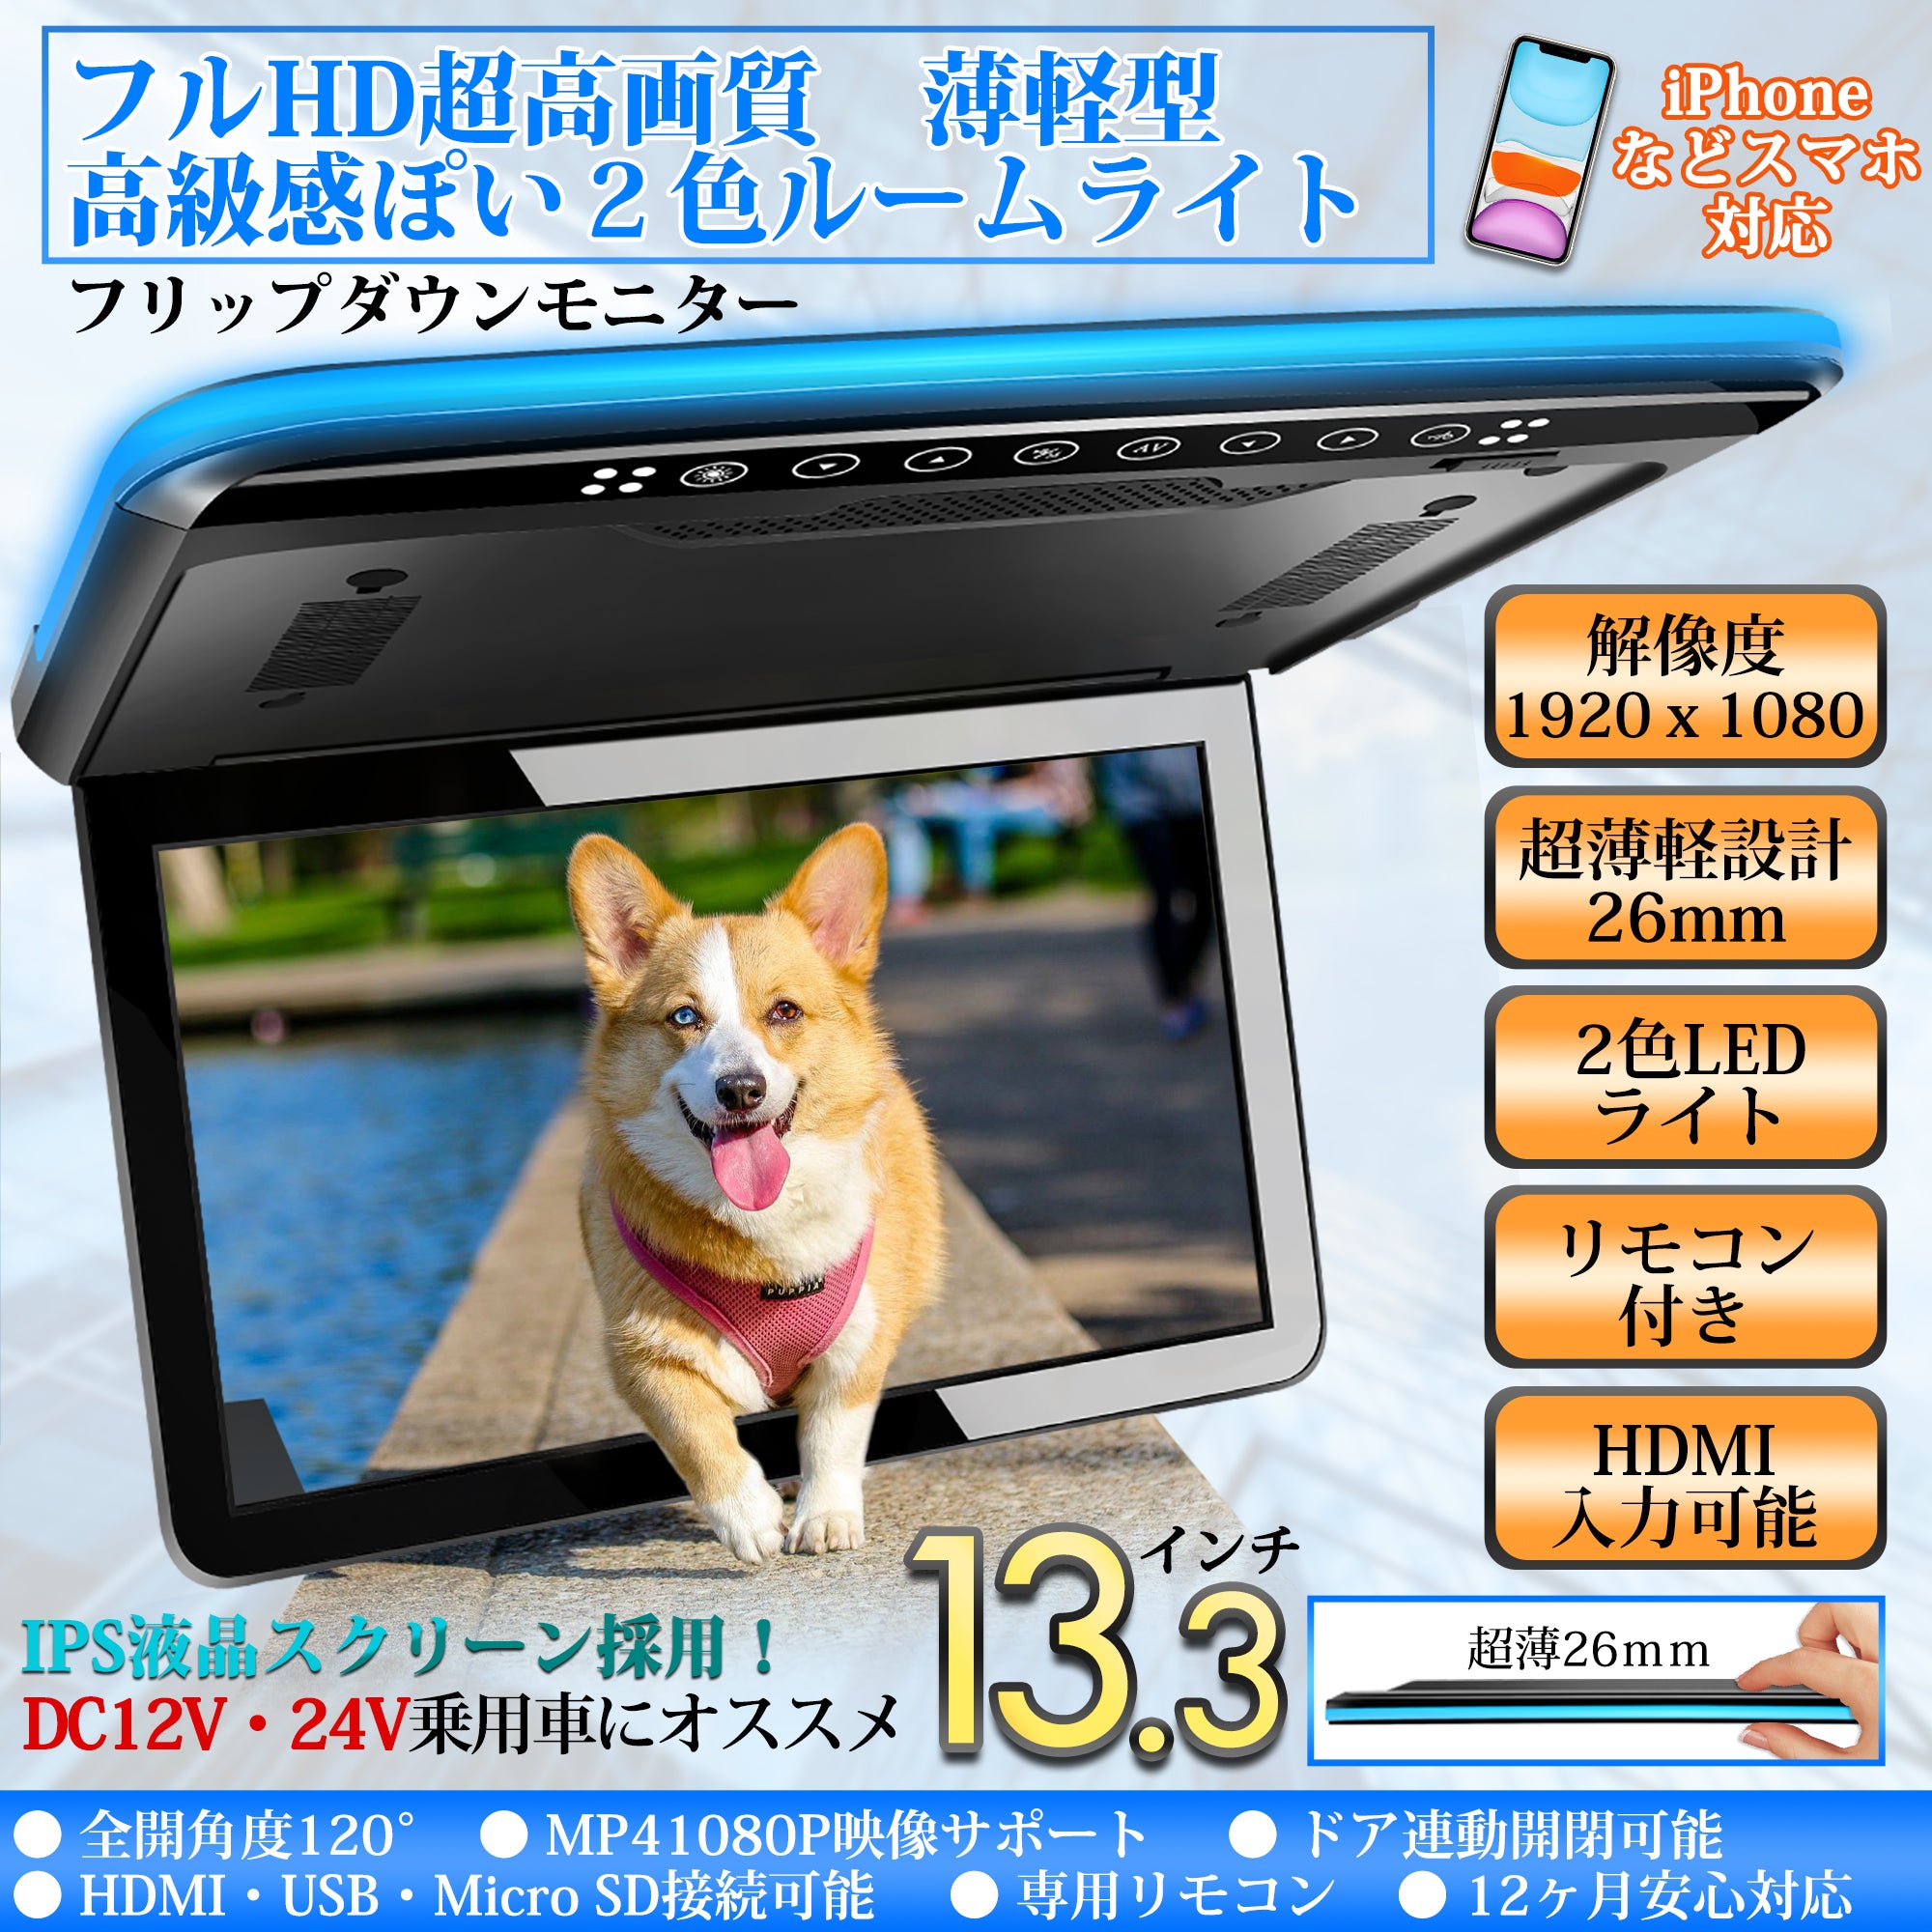 PR223 フリップダウンモニター 13.3インチ大画面 フルHD 1080P 超薄型 – PORMIDO